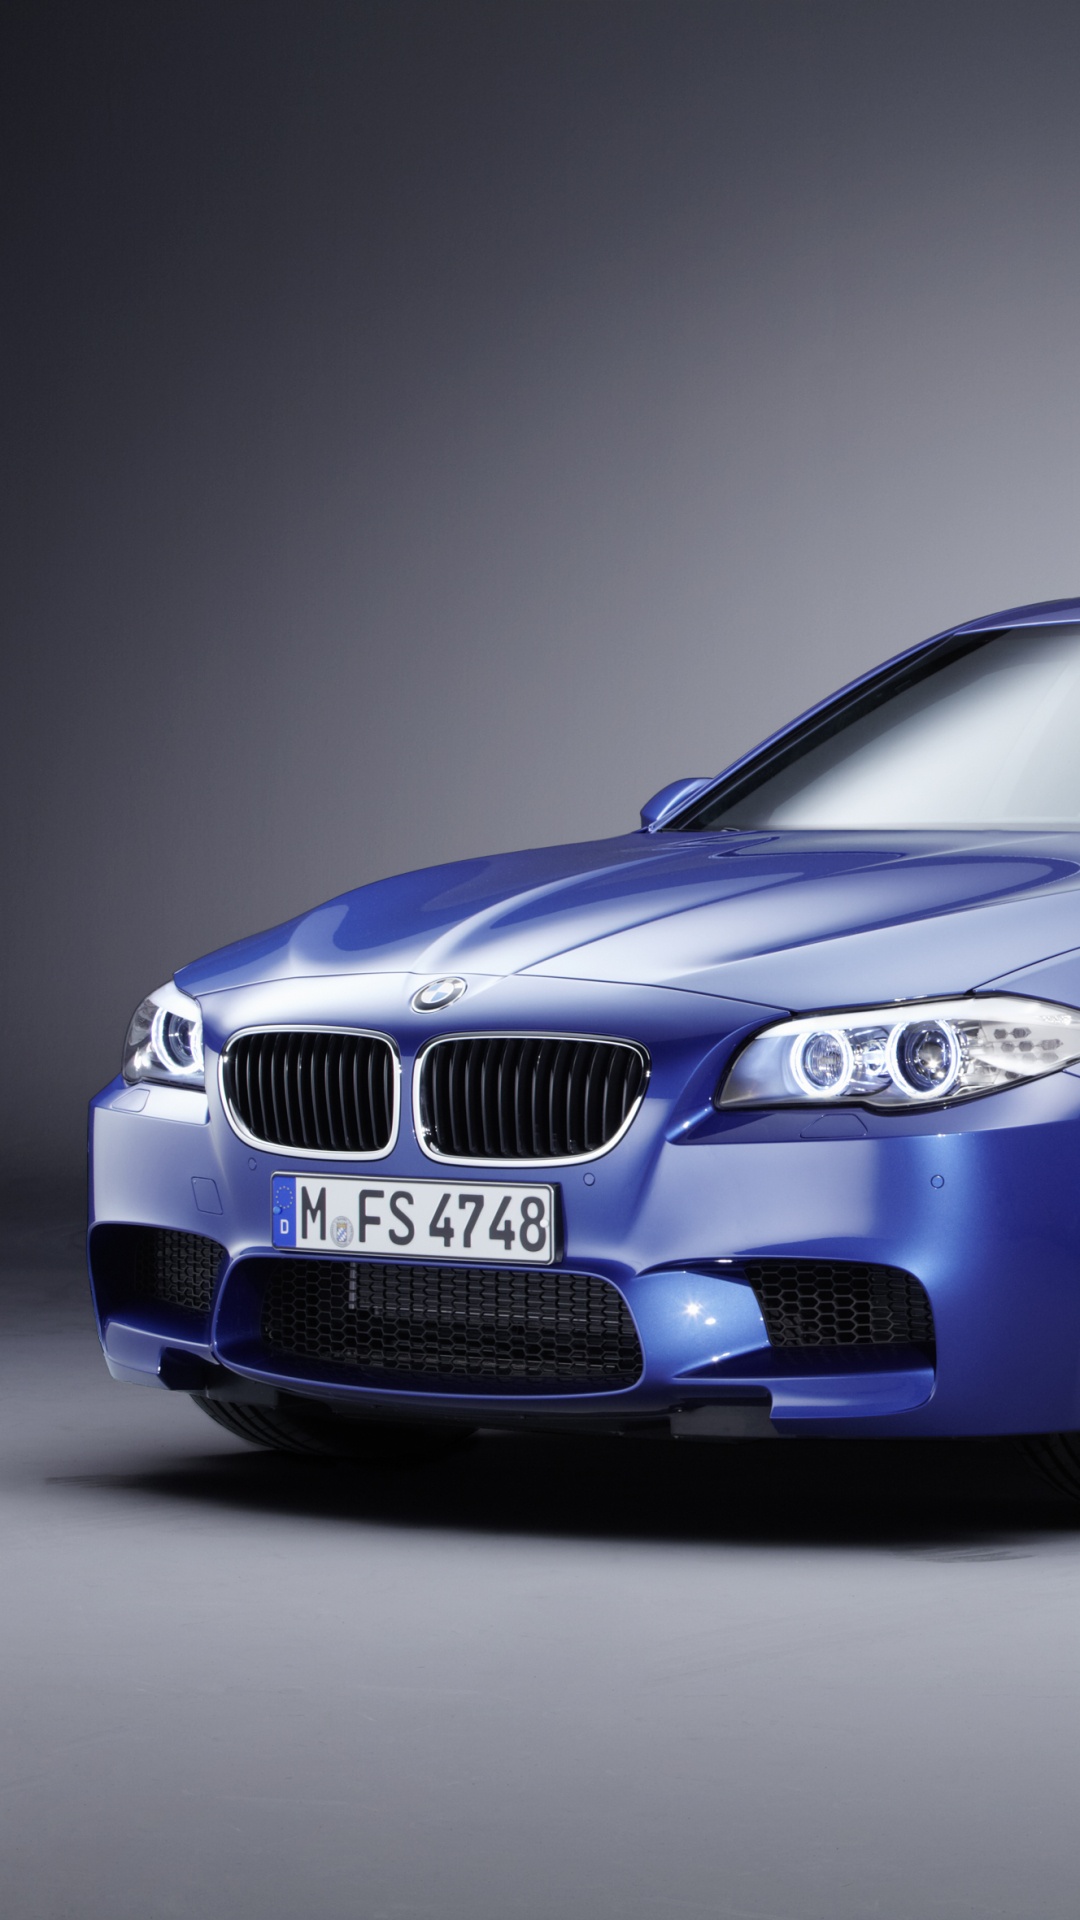 2013年BMW M5, 宝马, 宝马5系列F10, 宝马3系列, BMW1系 壁纸 1080x1920 允许